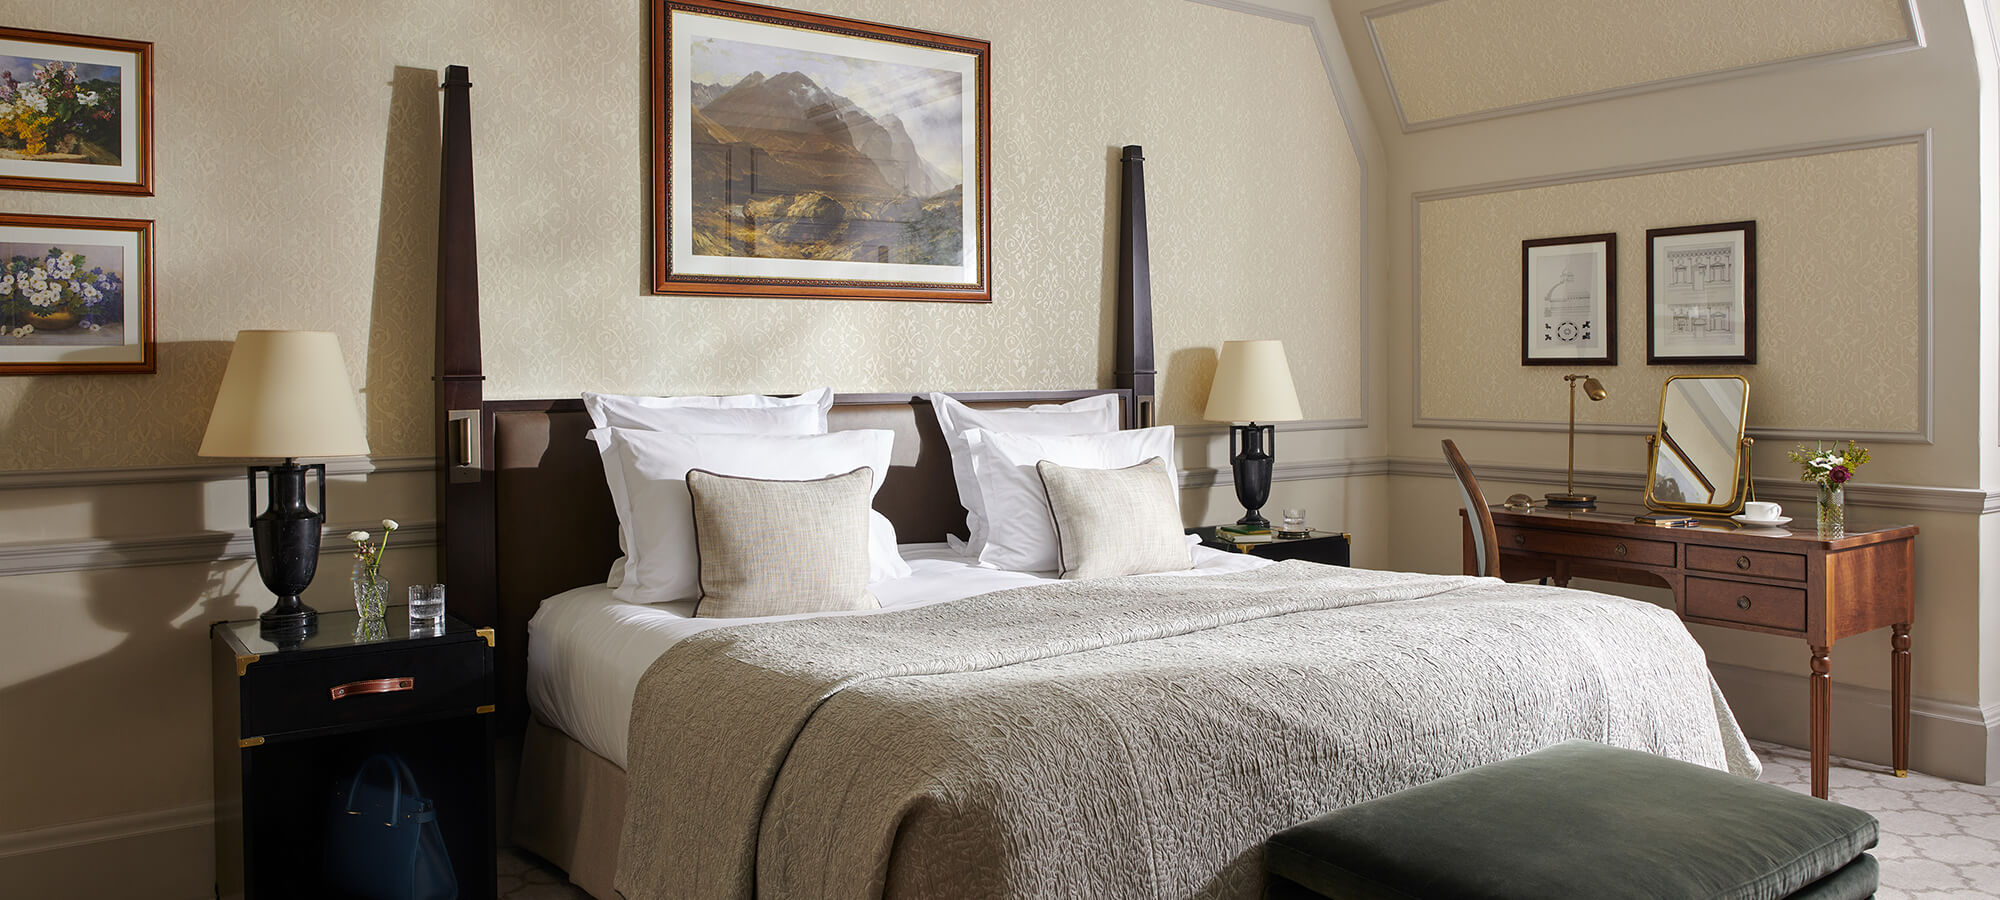 Un lit king-size dans une belle chambre Country avec des tableaux aux murs et un bureau à côté.